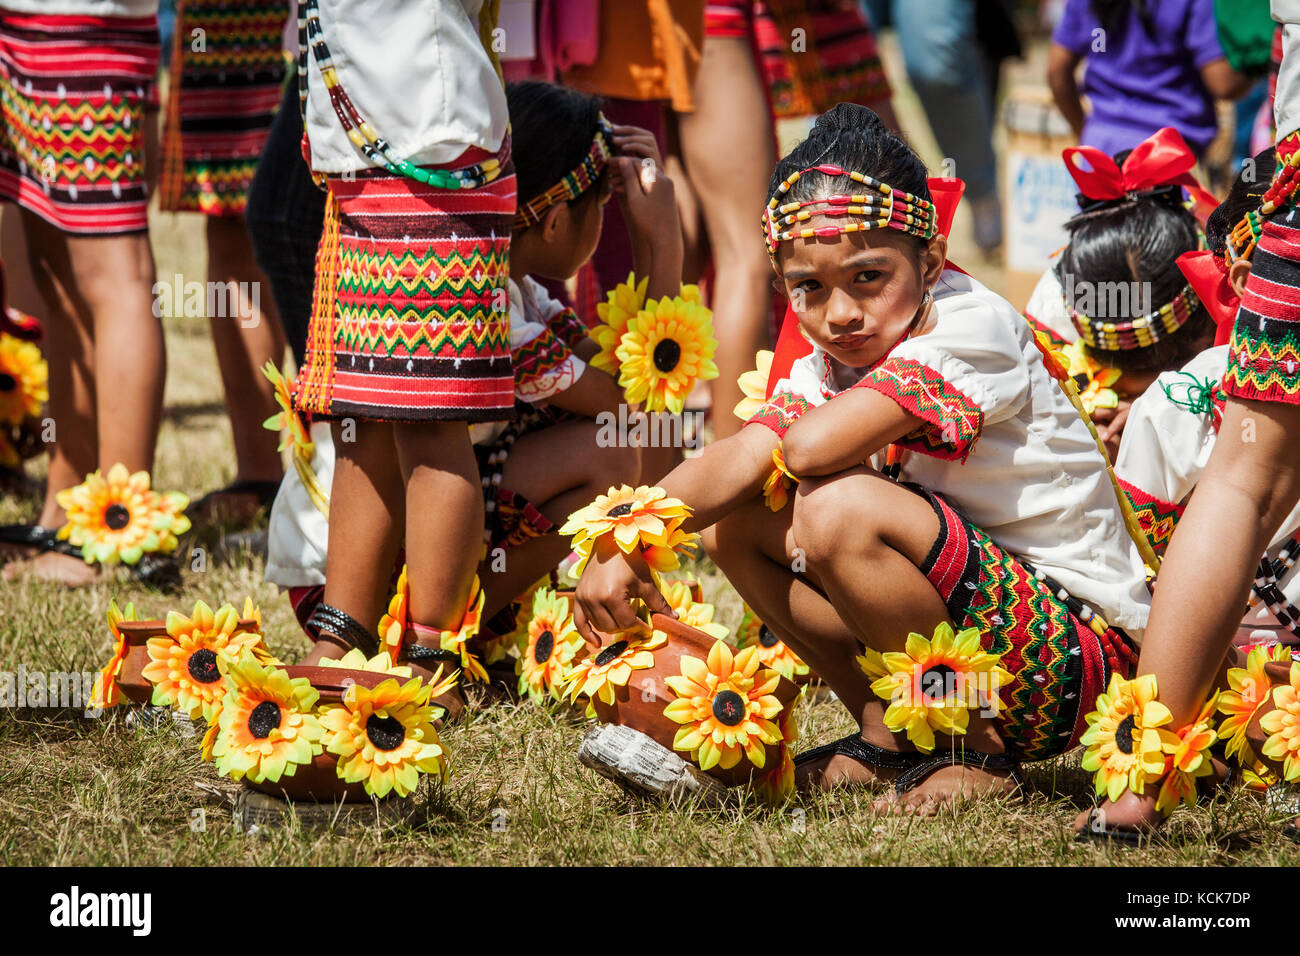 Les filles des Philippines se préparent à prendre part à l'panagbenga ou le festival le festival des fleurs de Baguio. événement haut en couleur avec des jeunes portant des costumes tribaux Banque D'Images